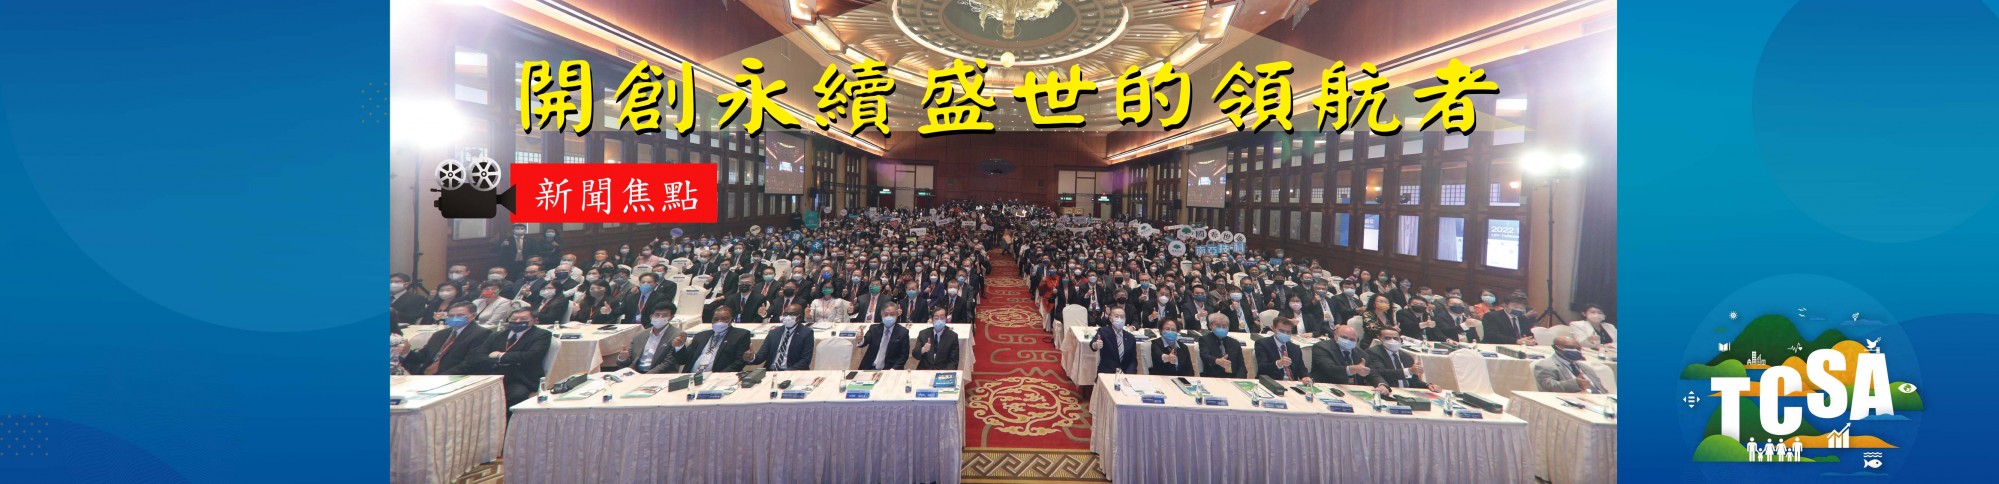 2022第15屆台灣企業永續獎新聞露出 分享榮耀與永續成果 